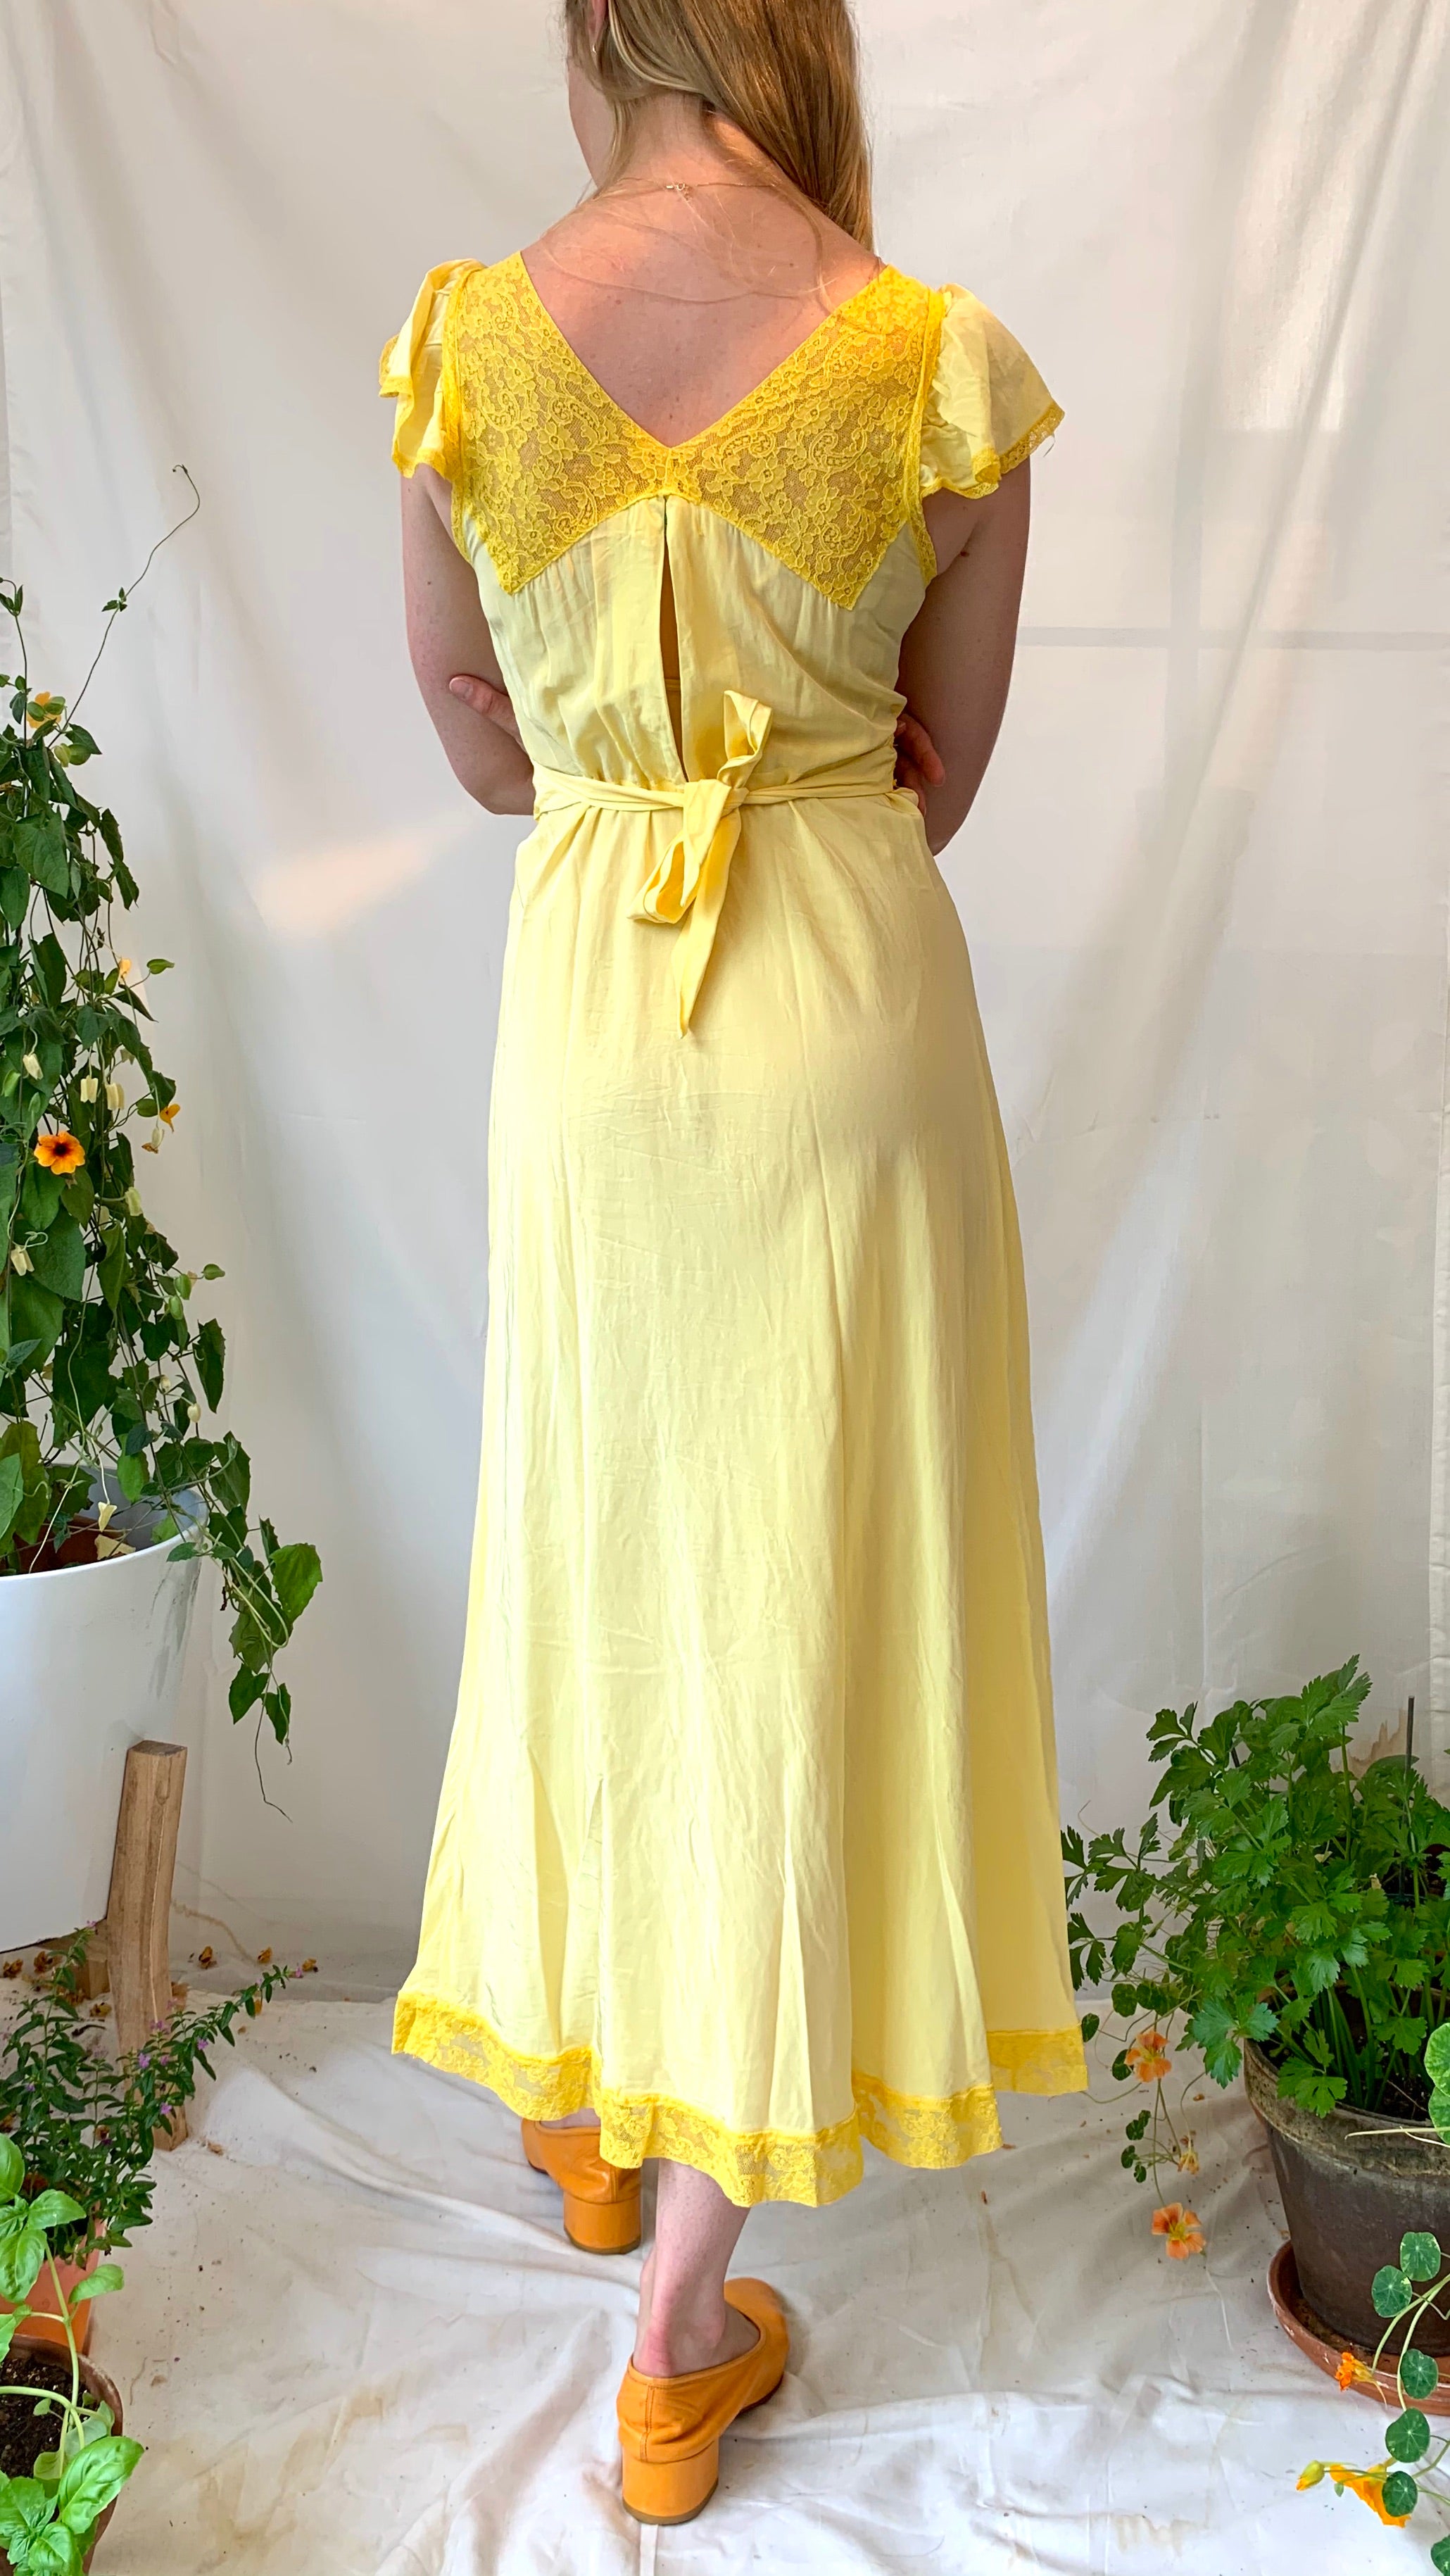 Hand Dyed Sunflower Yellow Slip Dress